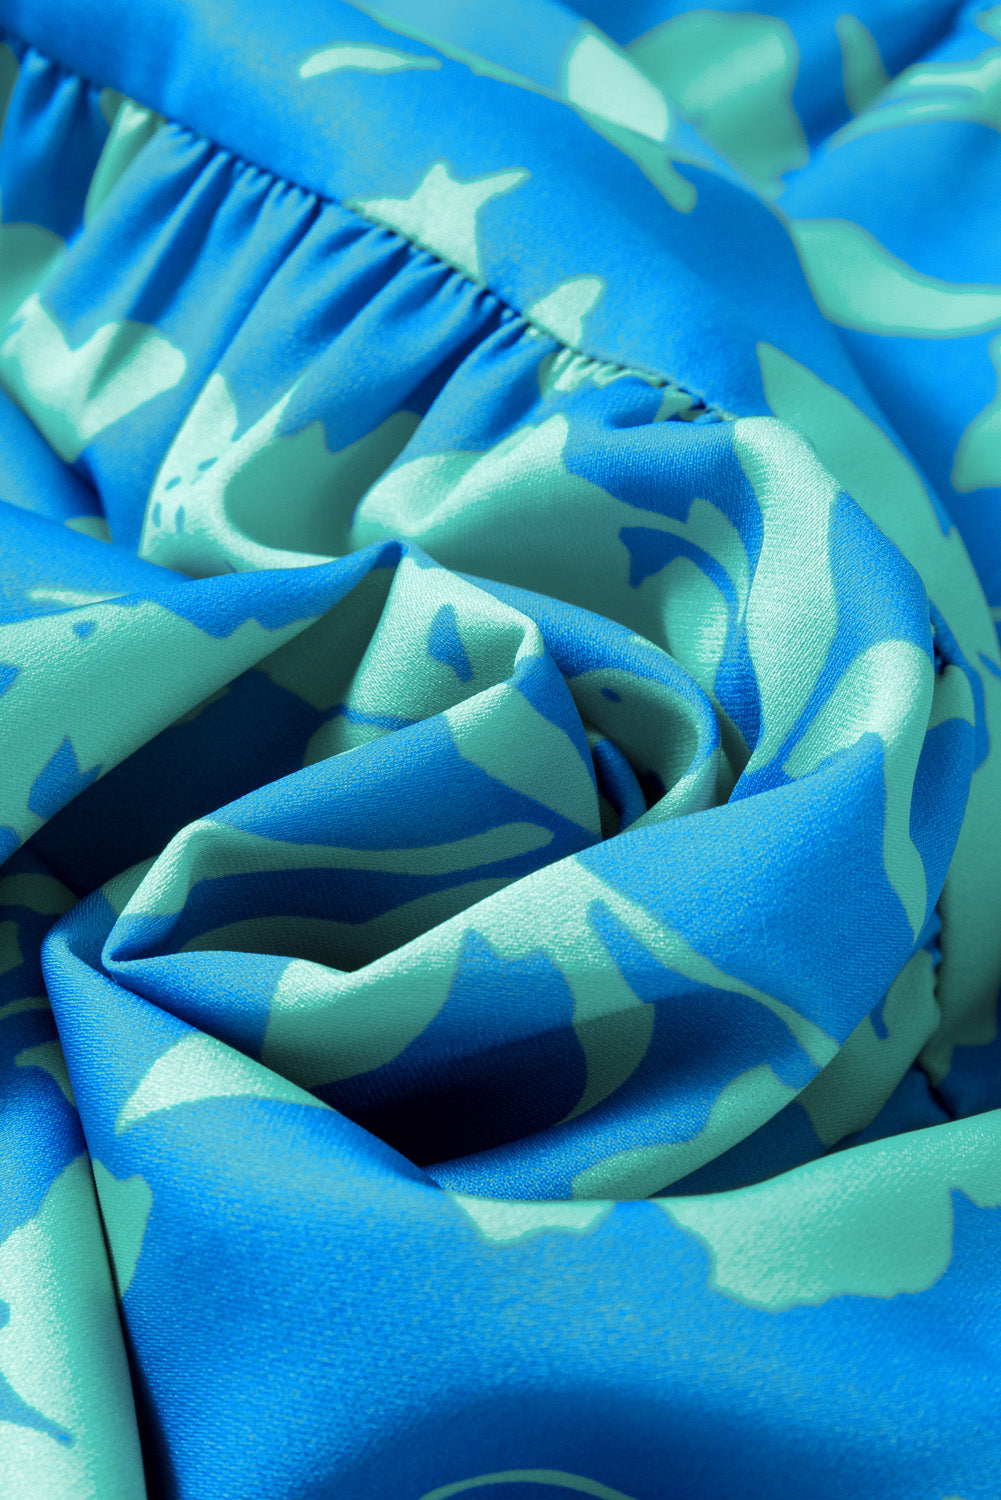 Sky Blue Plus Size Floral Print Flutter Sleeve Buttoned Mini Dress